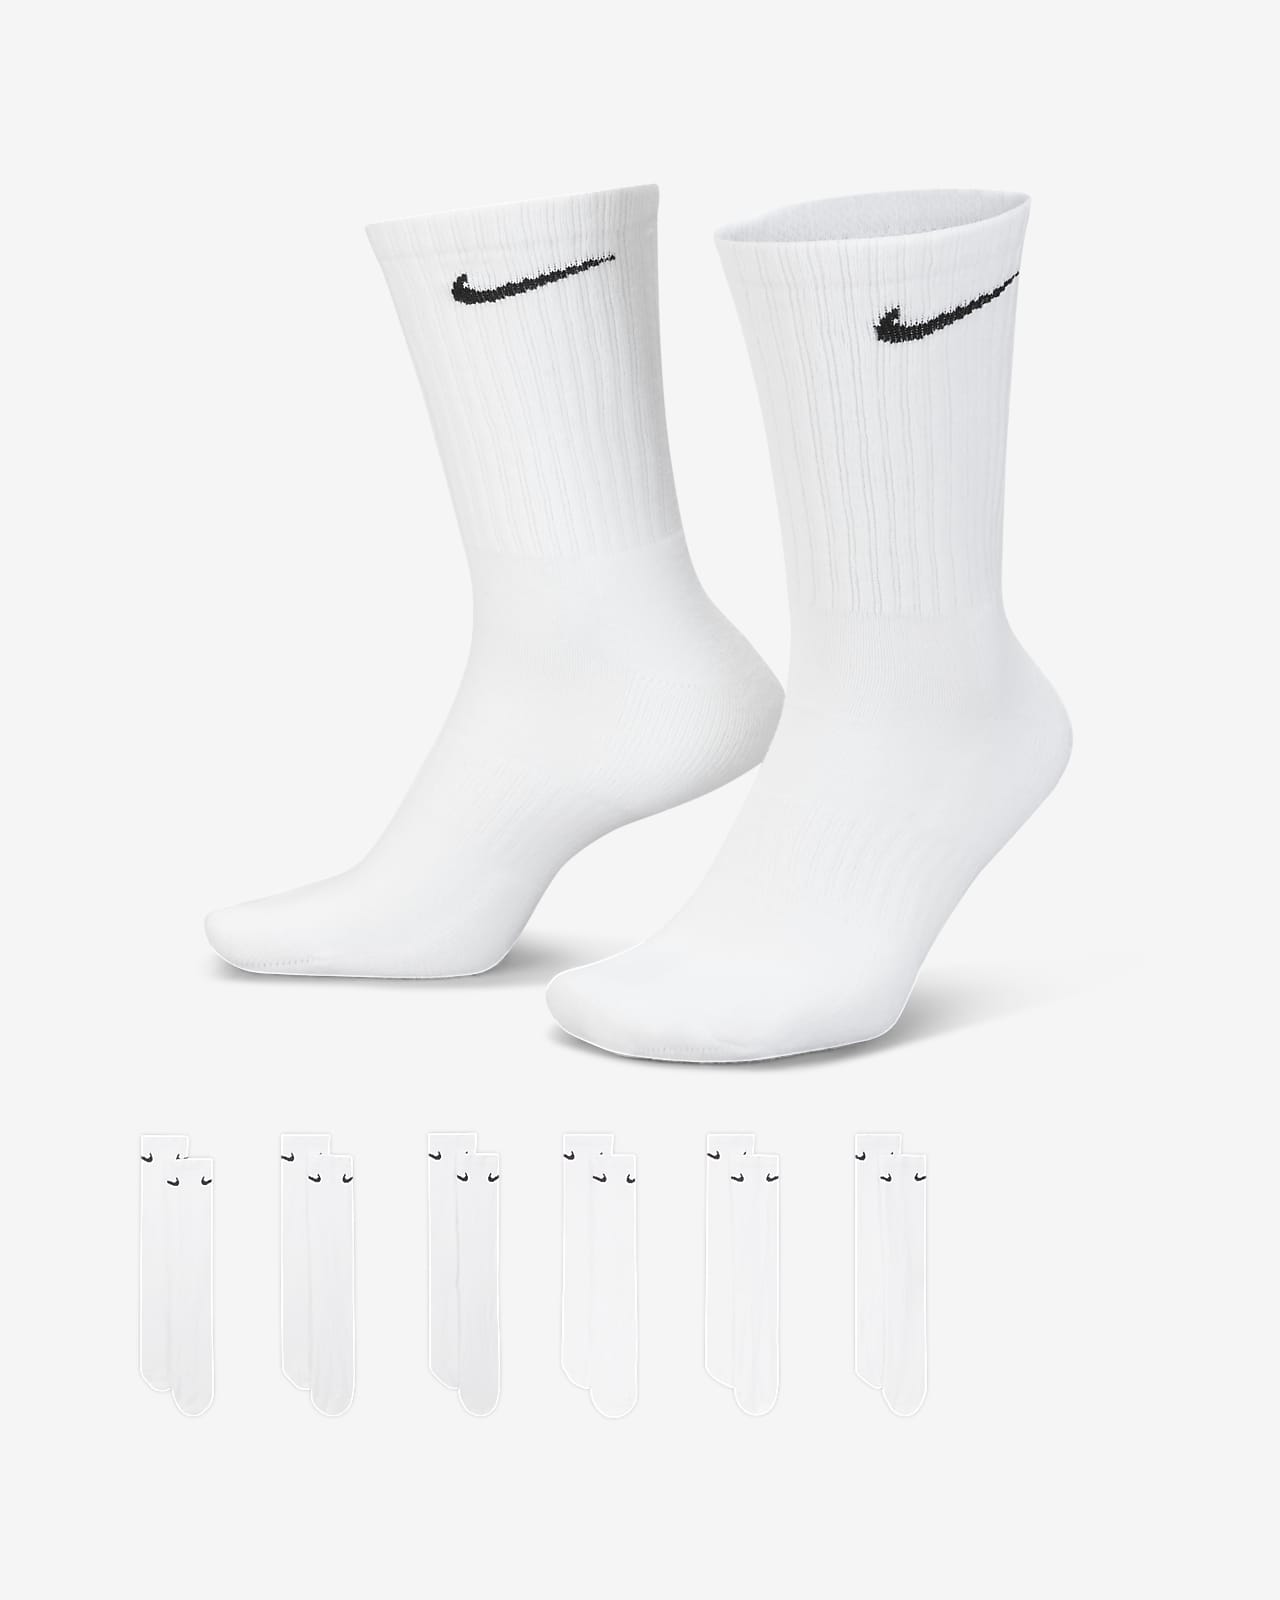 Nike Socquettes Everyday Cush Crew Pack de 3 - Blanc/Noir Enfant